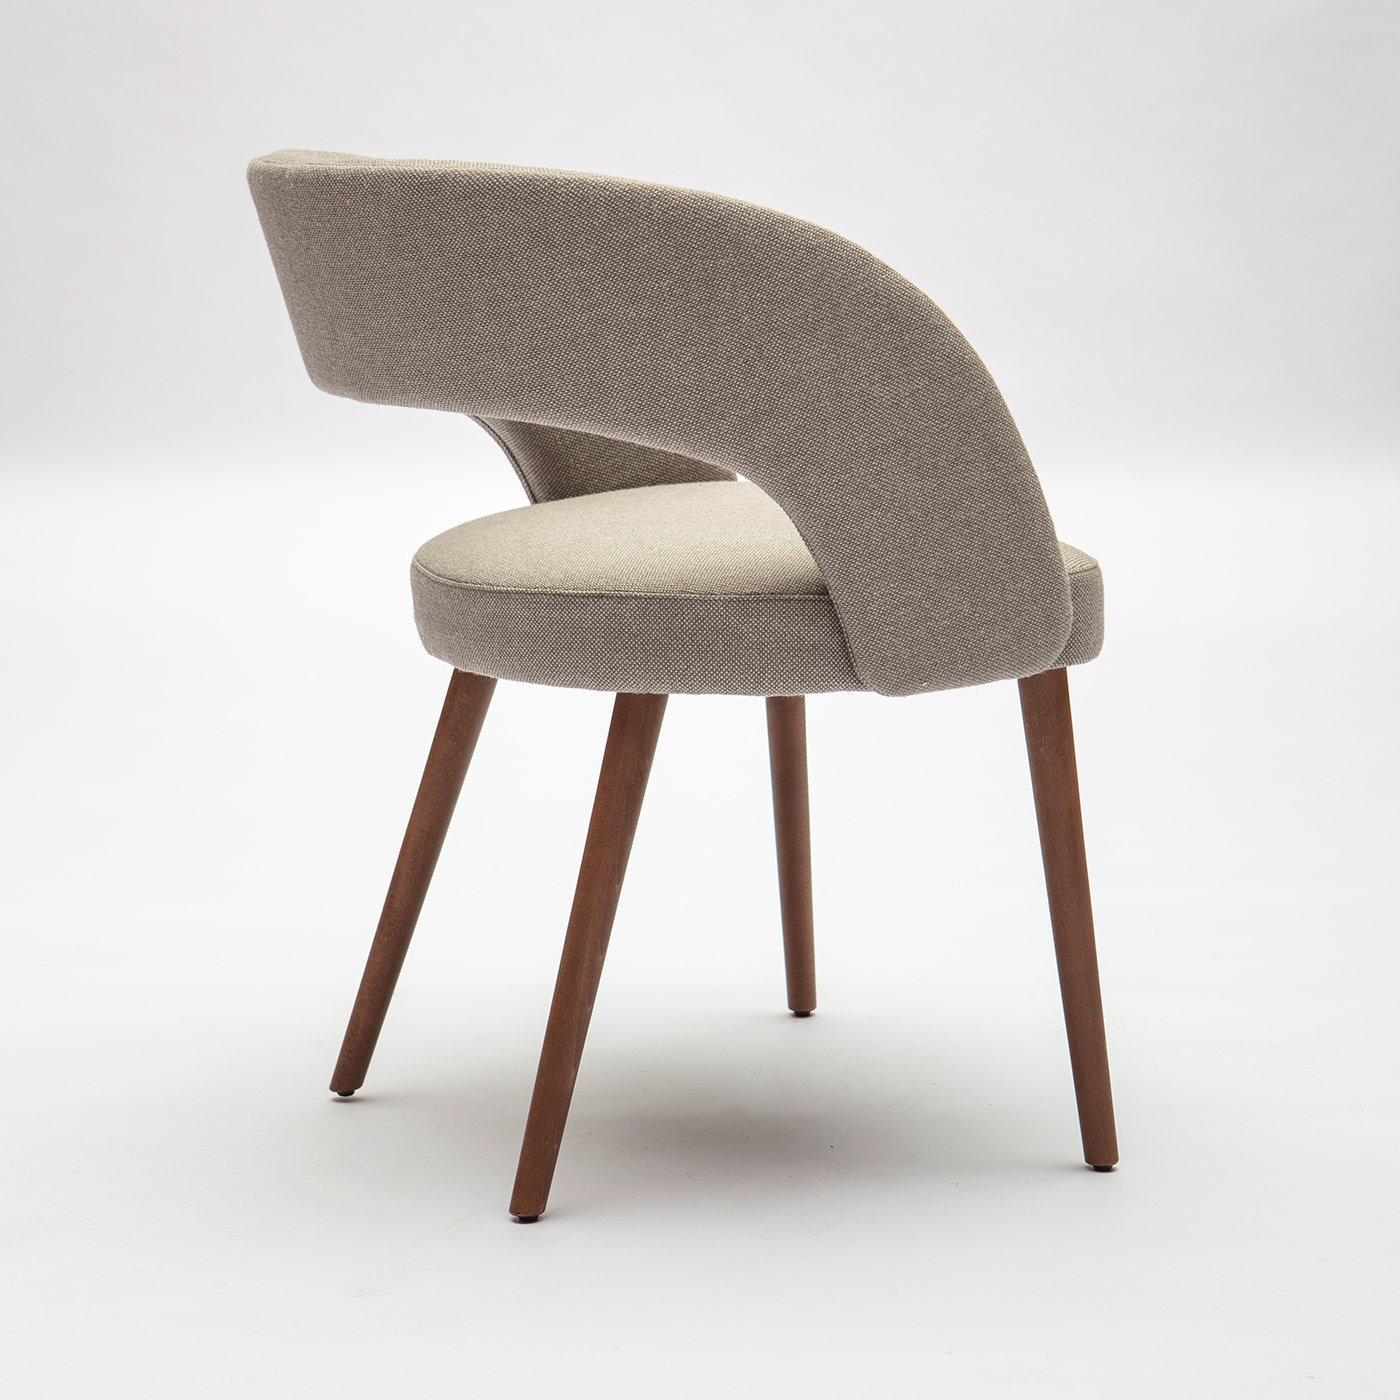 Mit seiner Kombination aus Retro-Formen und modernen Oberflächen strahlt der Ring-Stuhl Raffinesse aus. Im Einklang mit der Wiederbelebung des Midcentury Modern, ruht der Stuhl auf runden, ausgestellten Beinen aus massivem Buchenholz. Die